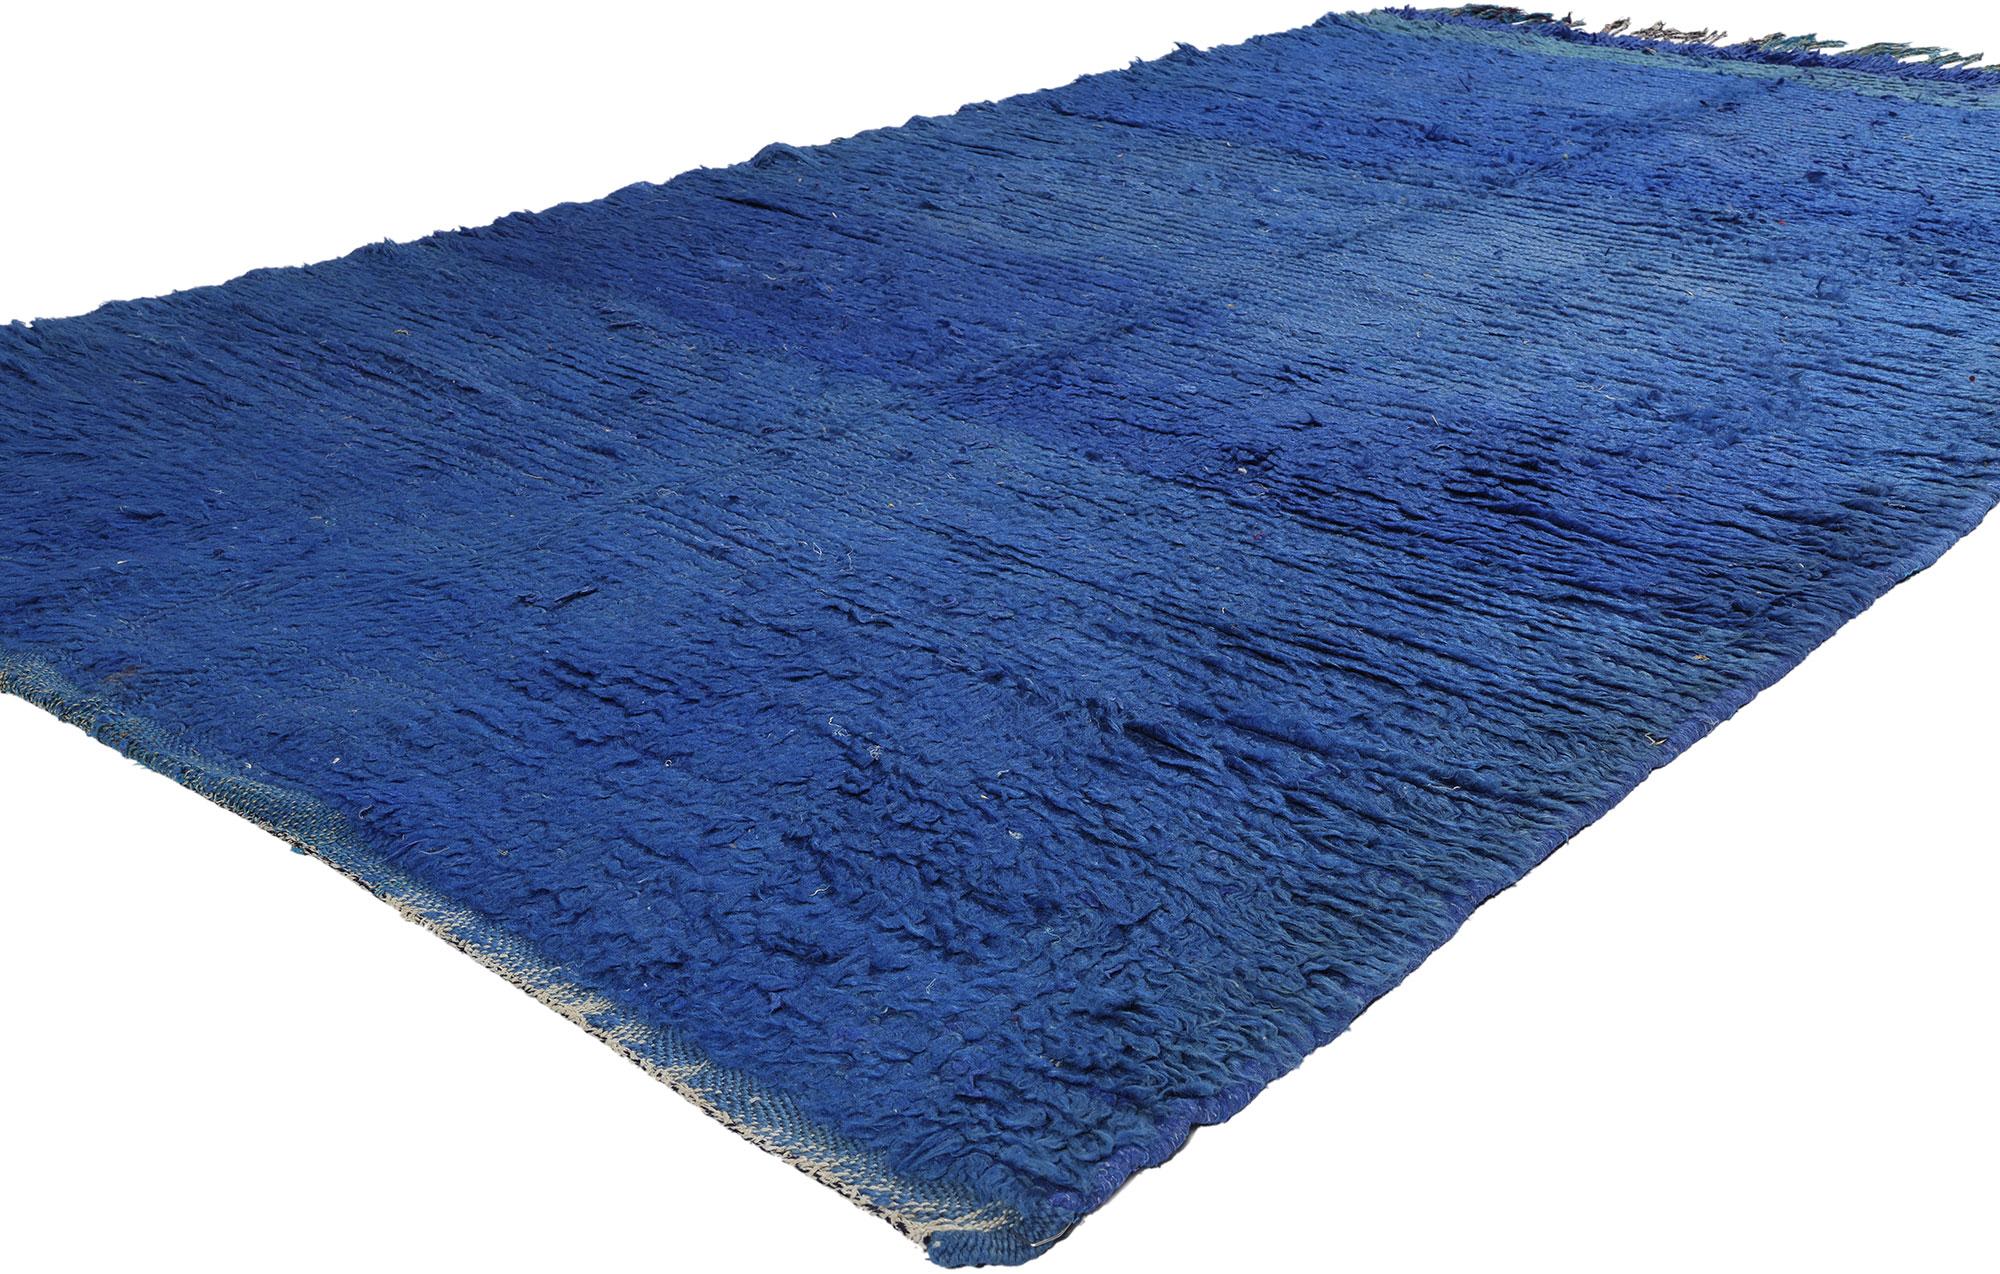 21773 Tapis marocain Beni Mrirt bleu vintage, 04'09 x 08'05. Les tapis Beni Mrirt représentent la tradition estimée du tissage marocain, connus pour leur texture luxueuse, leurs motifs géométriques et leurs tons terreux sereins. Fabriqués par des